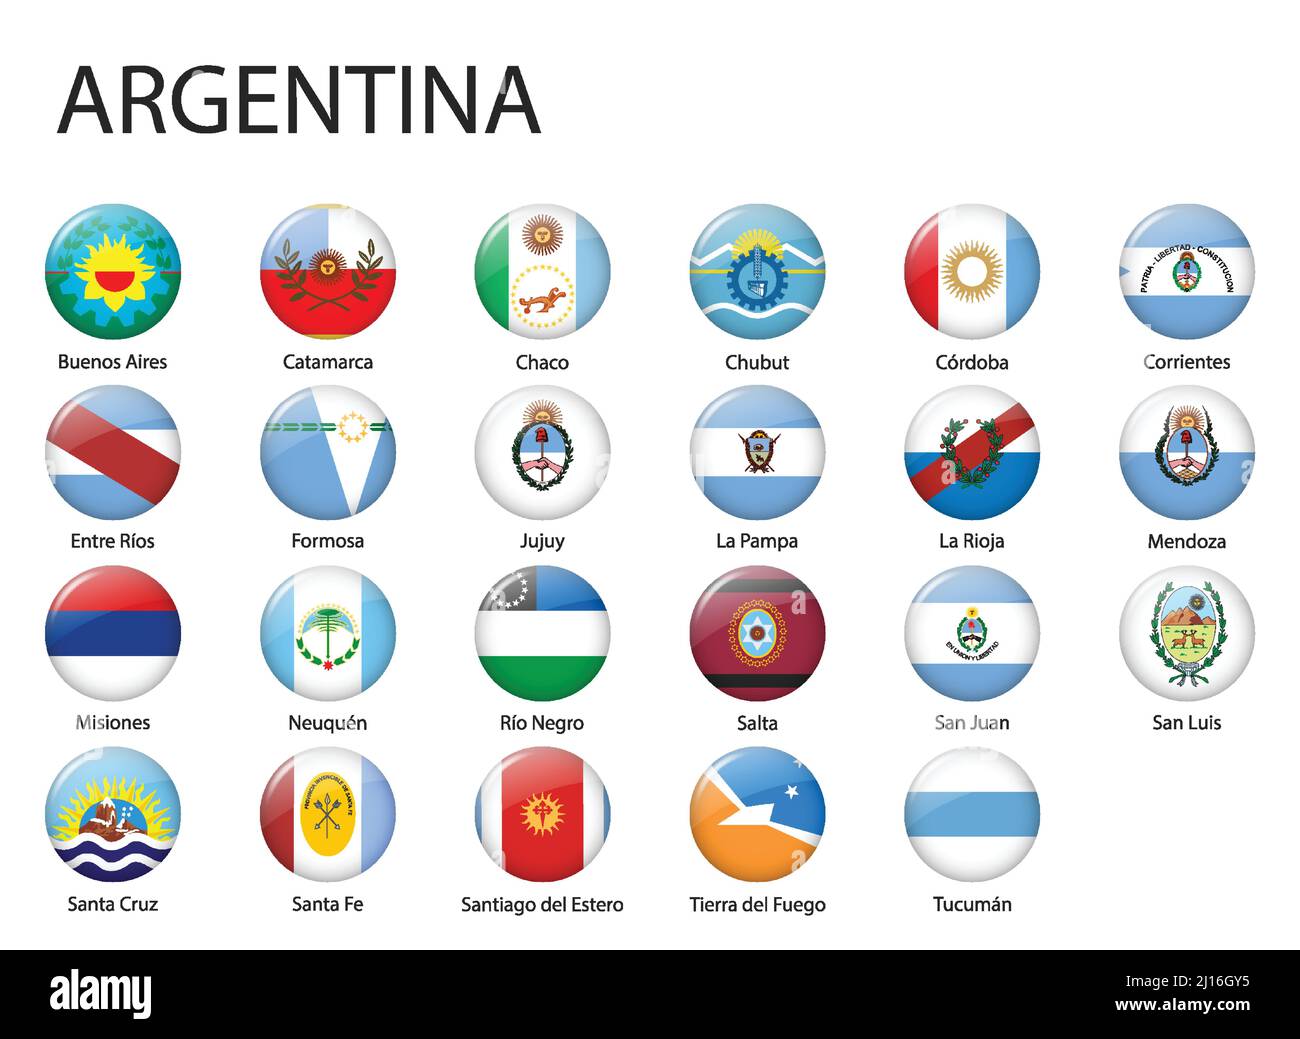 Alle Flaggen der Regionen Argentiniens. Glänzendes Flaggendesign mit Knöpfen Stock Vektor